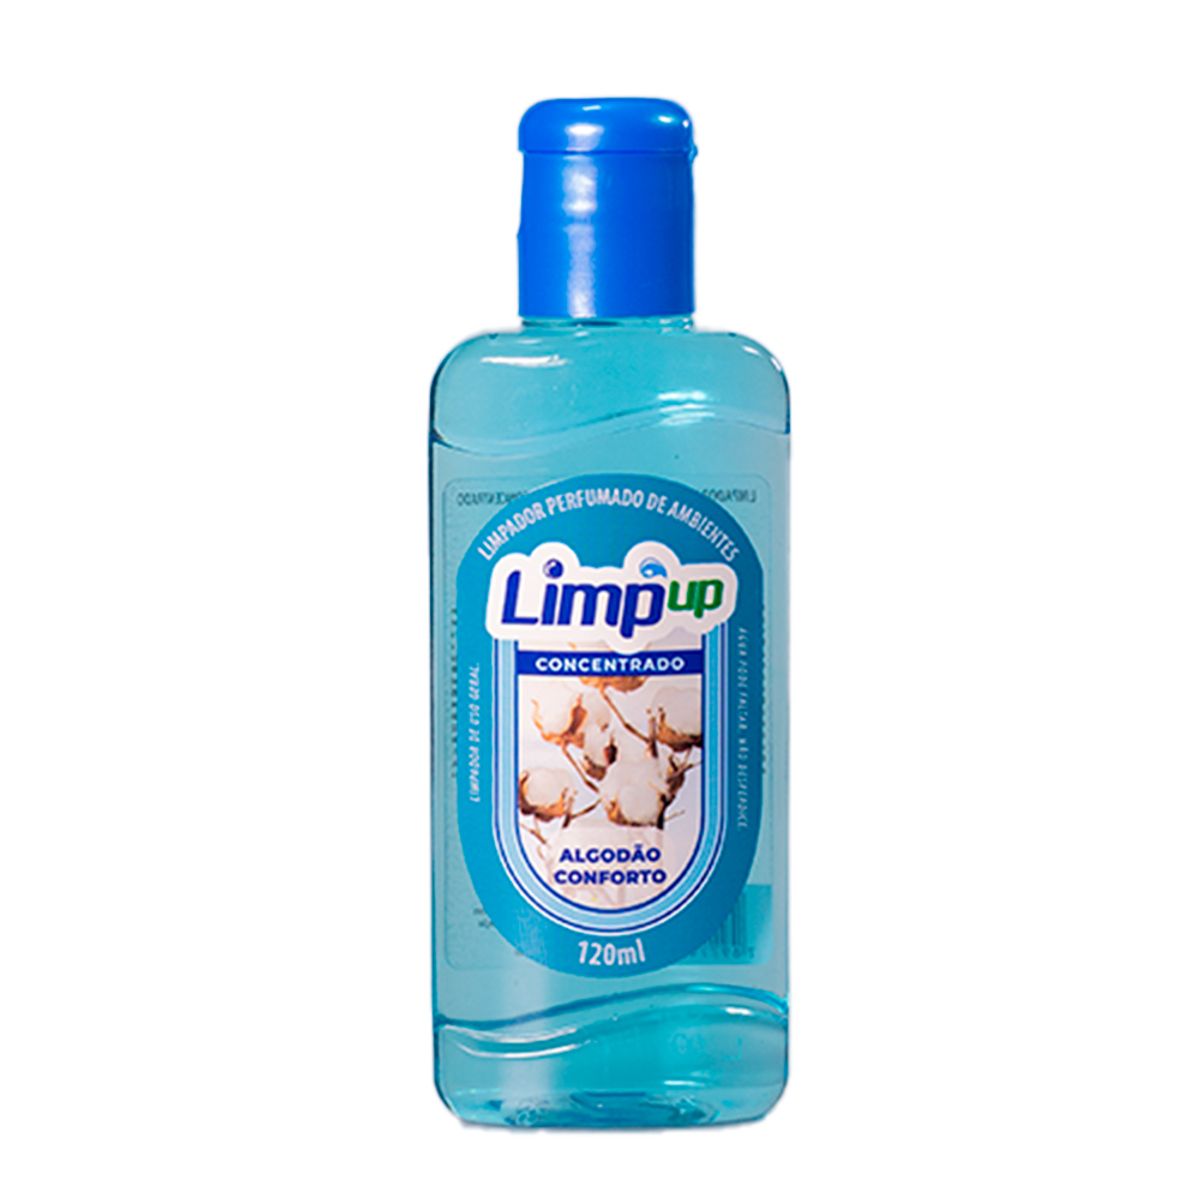 Limpador Perfumado Limp Up Algodão Conforto 120ml image number 0